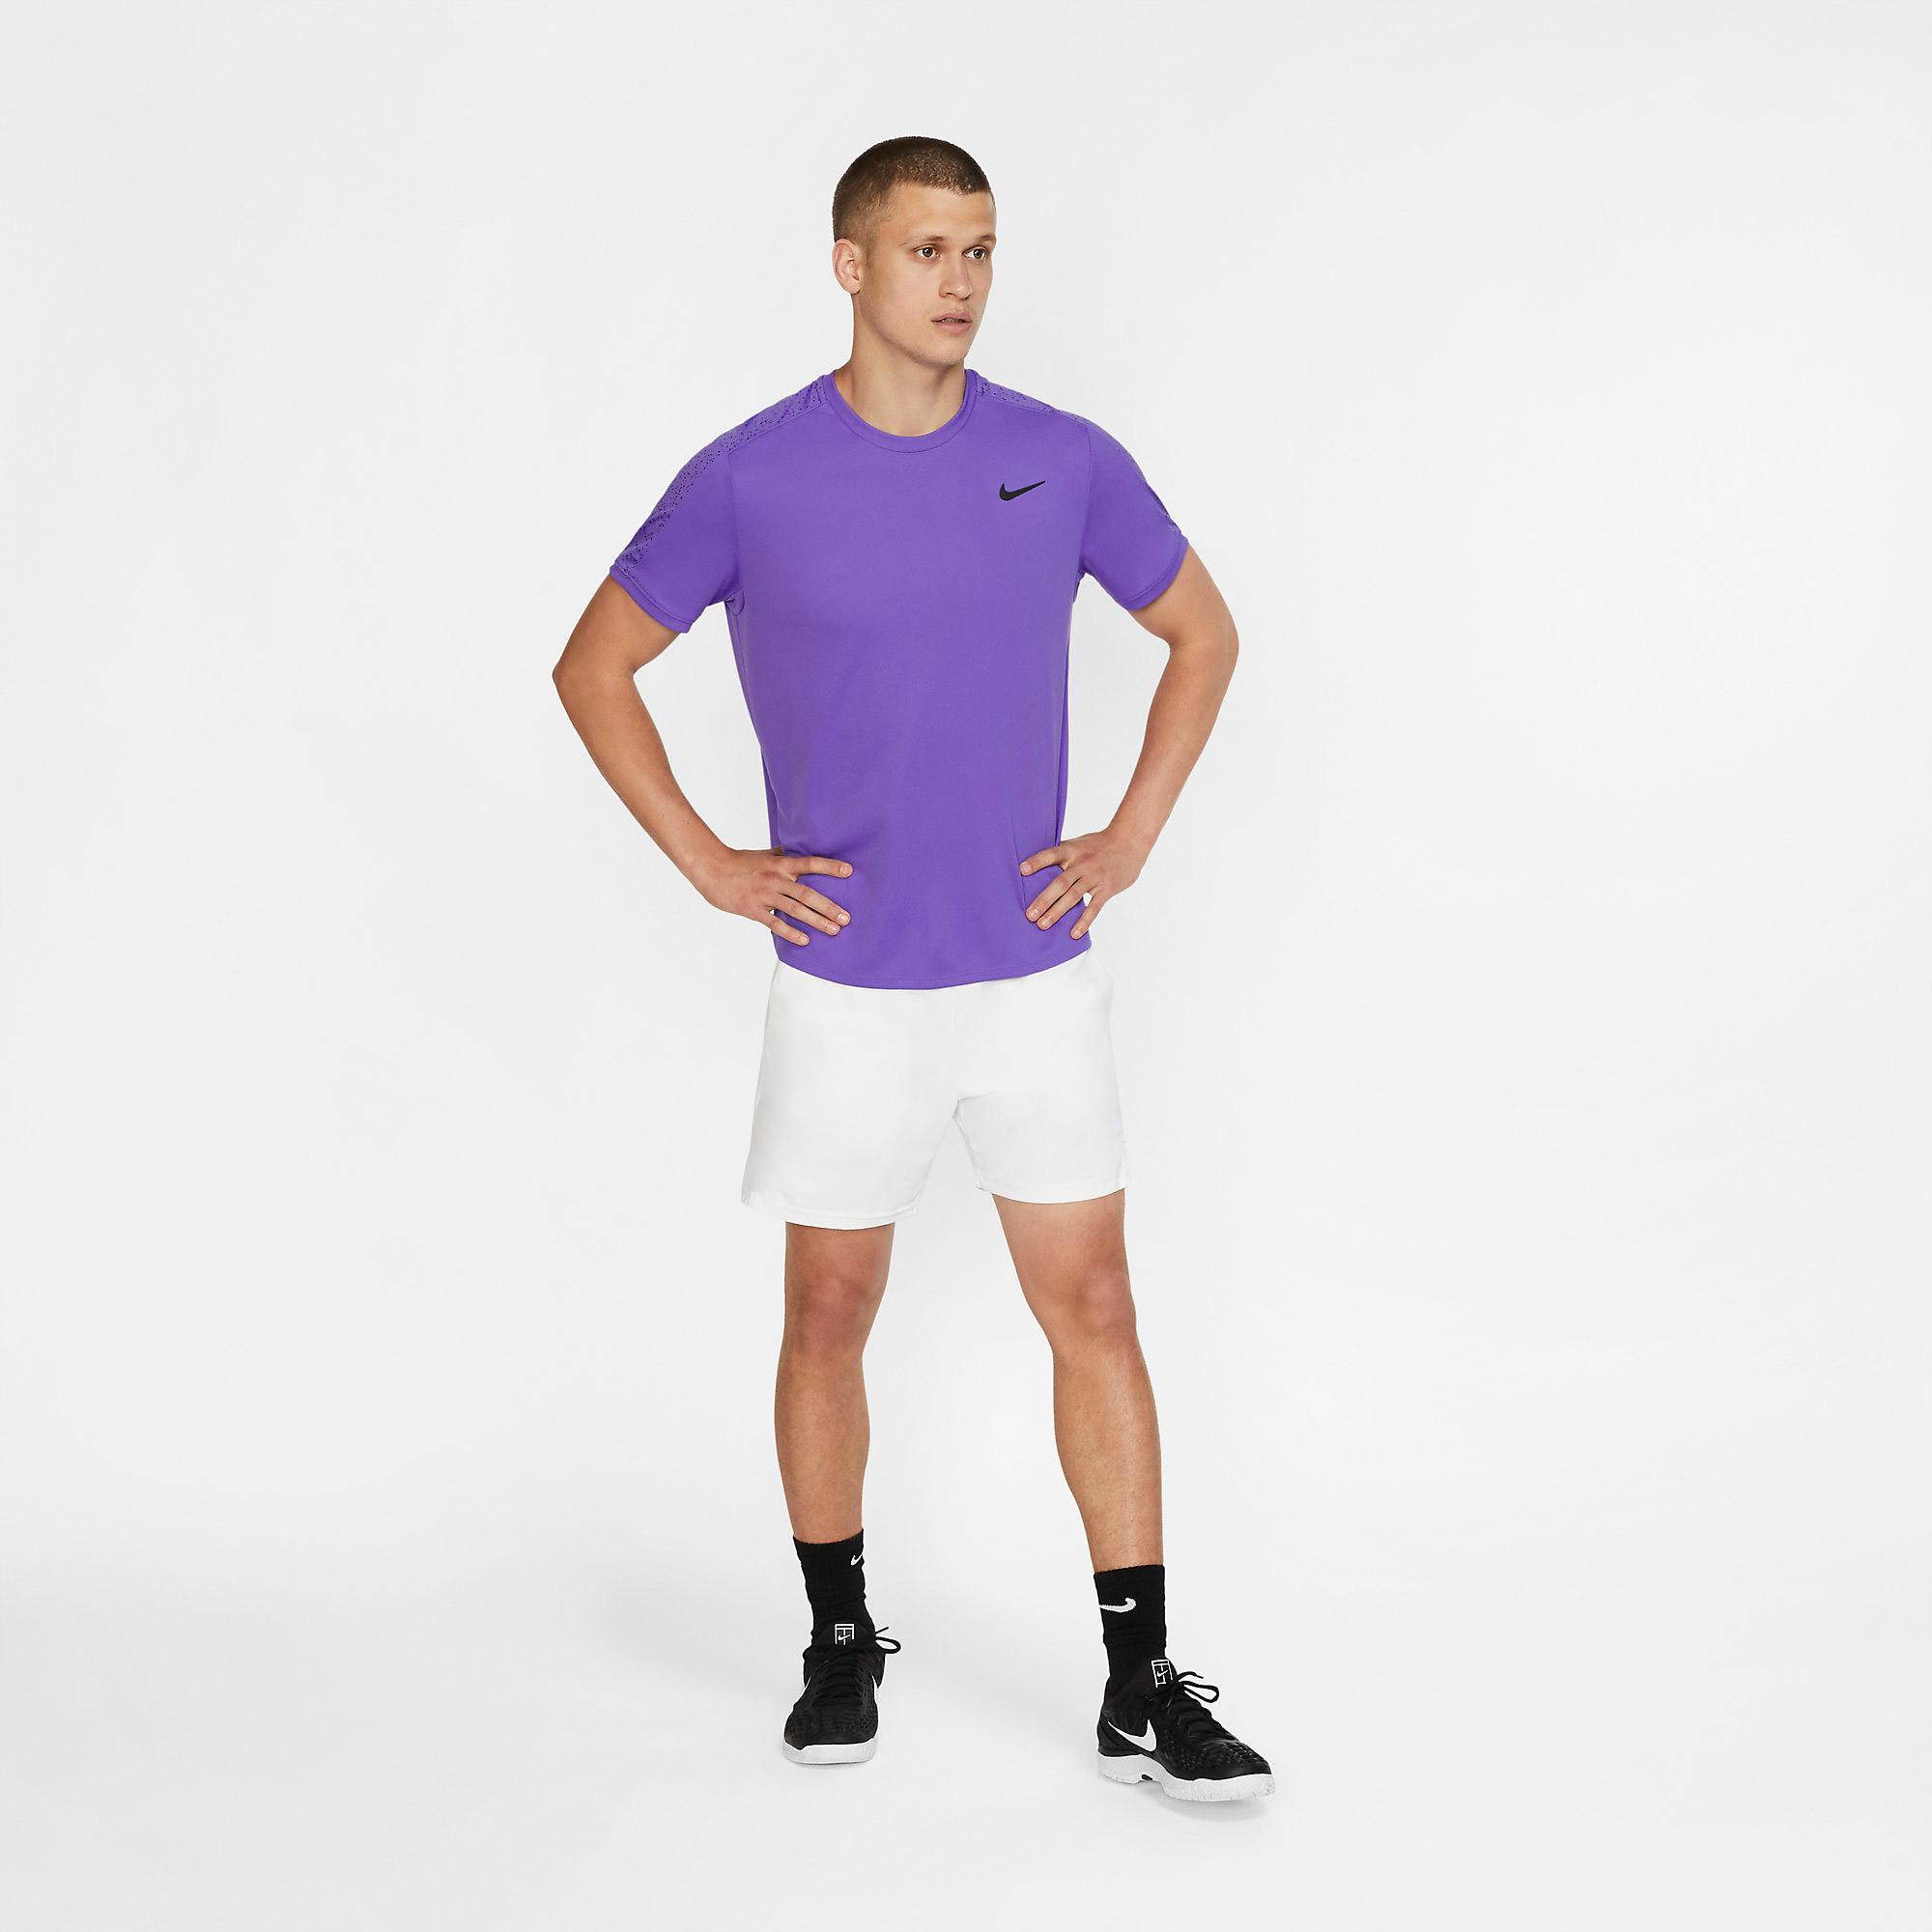 Nike Mens Dri-Fit Top - Psychic Purple - Tennisnuts.com